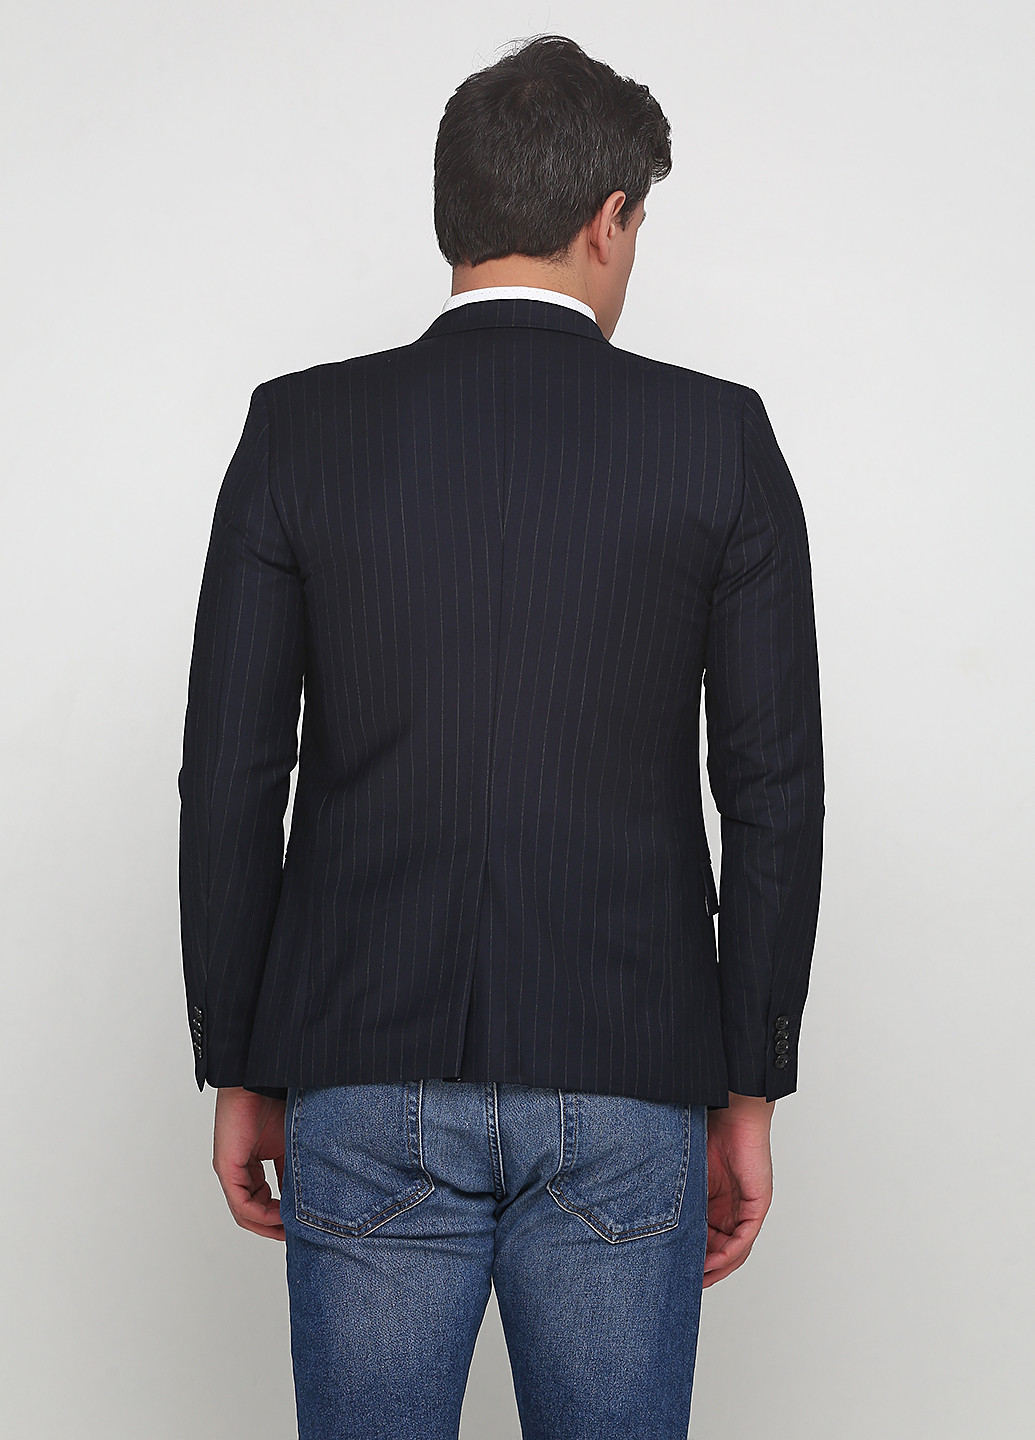 Пиджак H&M с длинным рукавом полоска тёмно-синий деловой